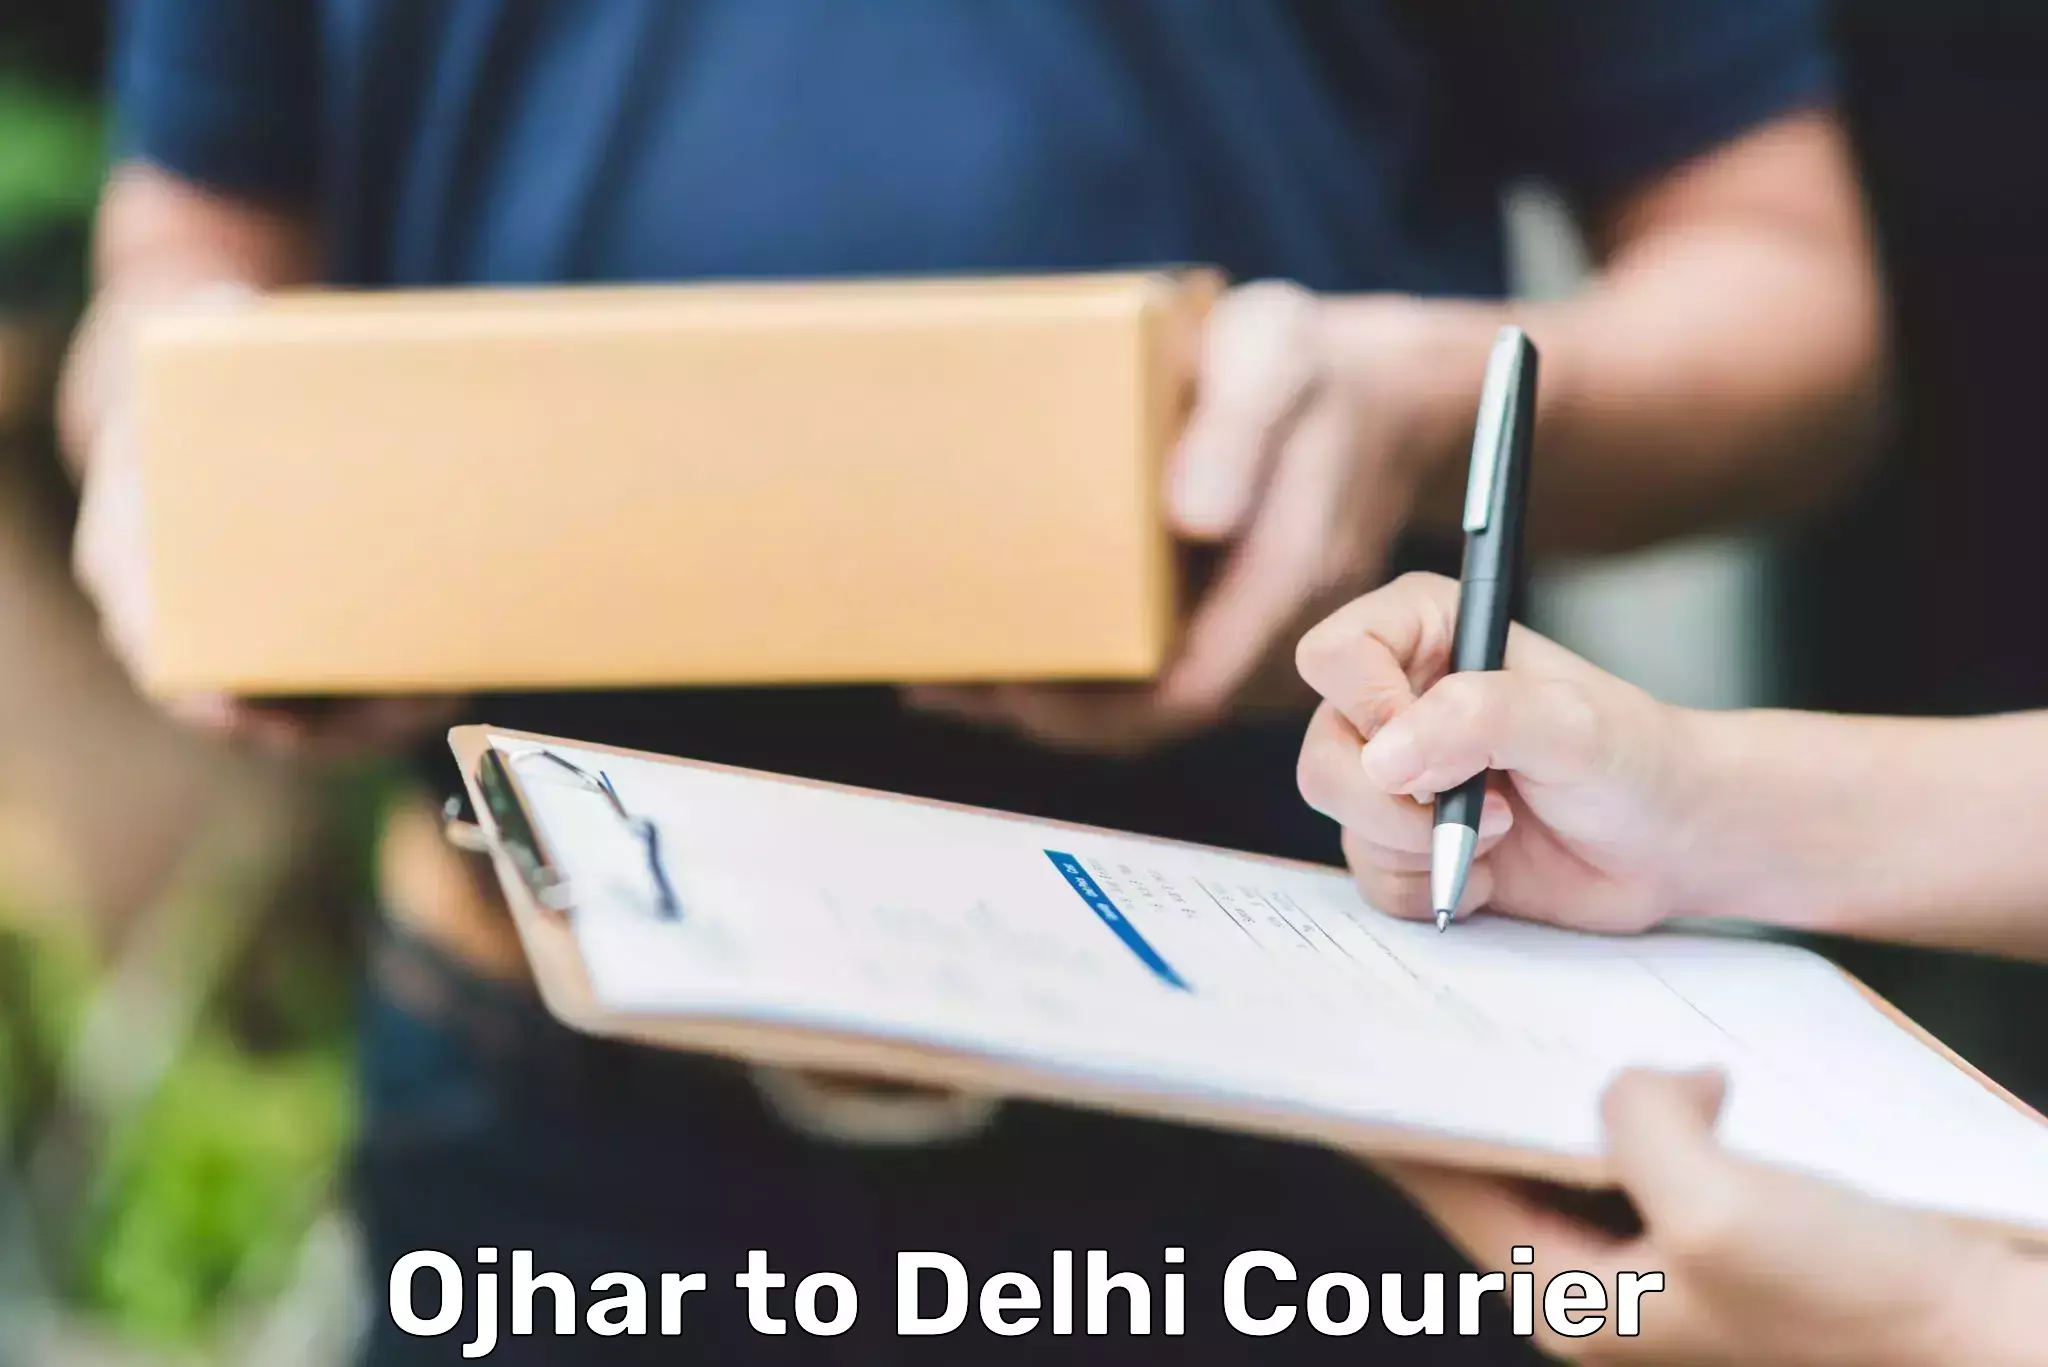 Courier service comparison Ojhar to Burari